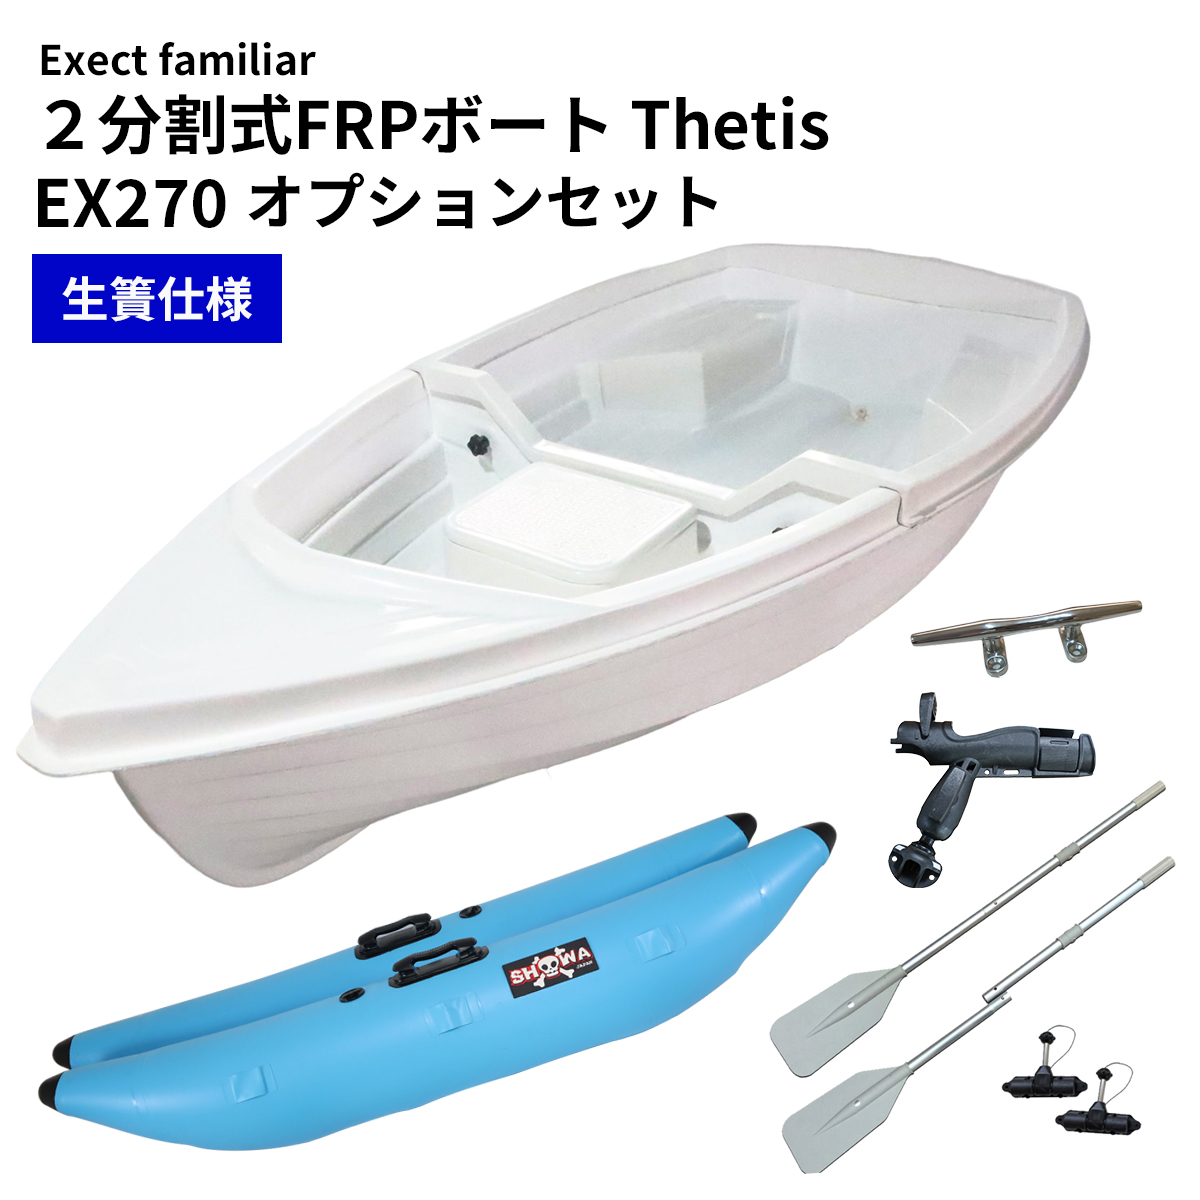 春の新作シューズ満載 2分割式FRPスコープボート Exect EX250FRPS 免許